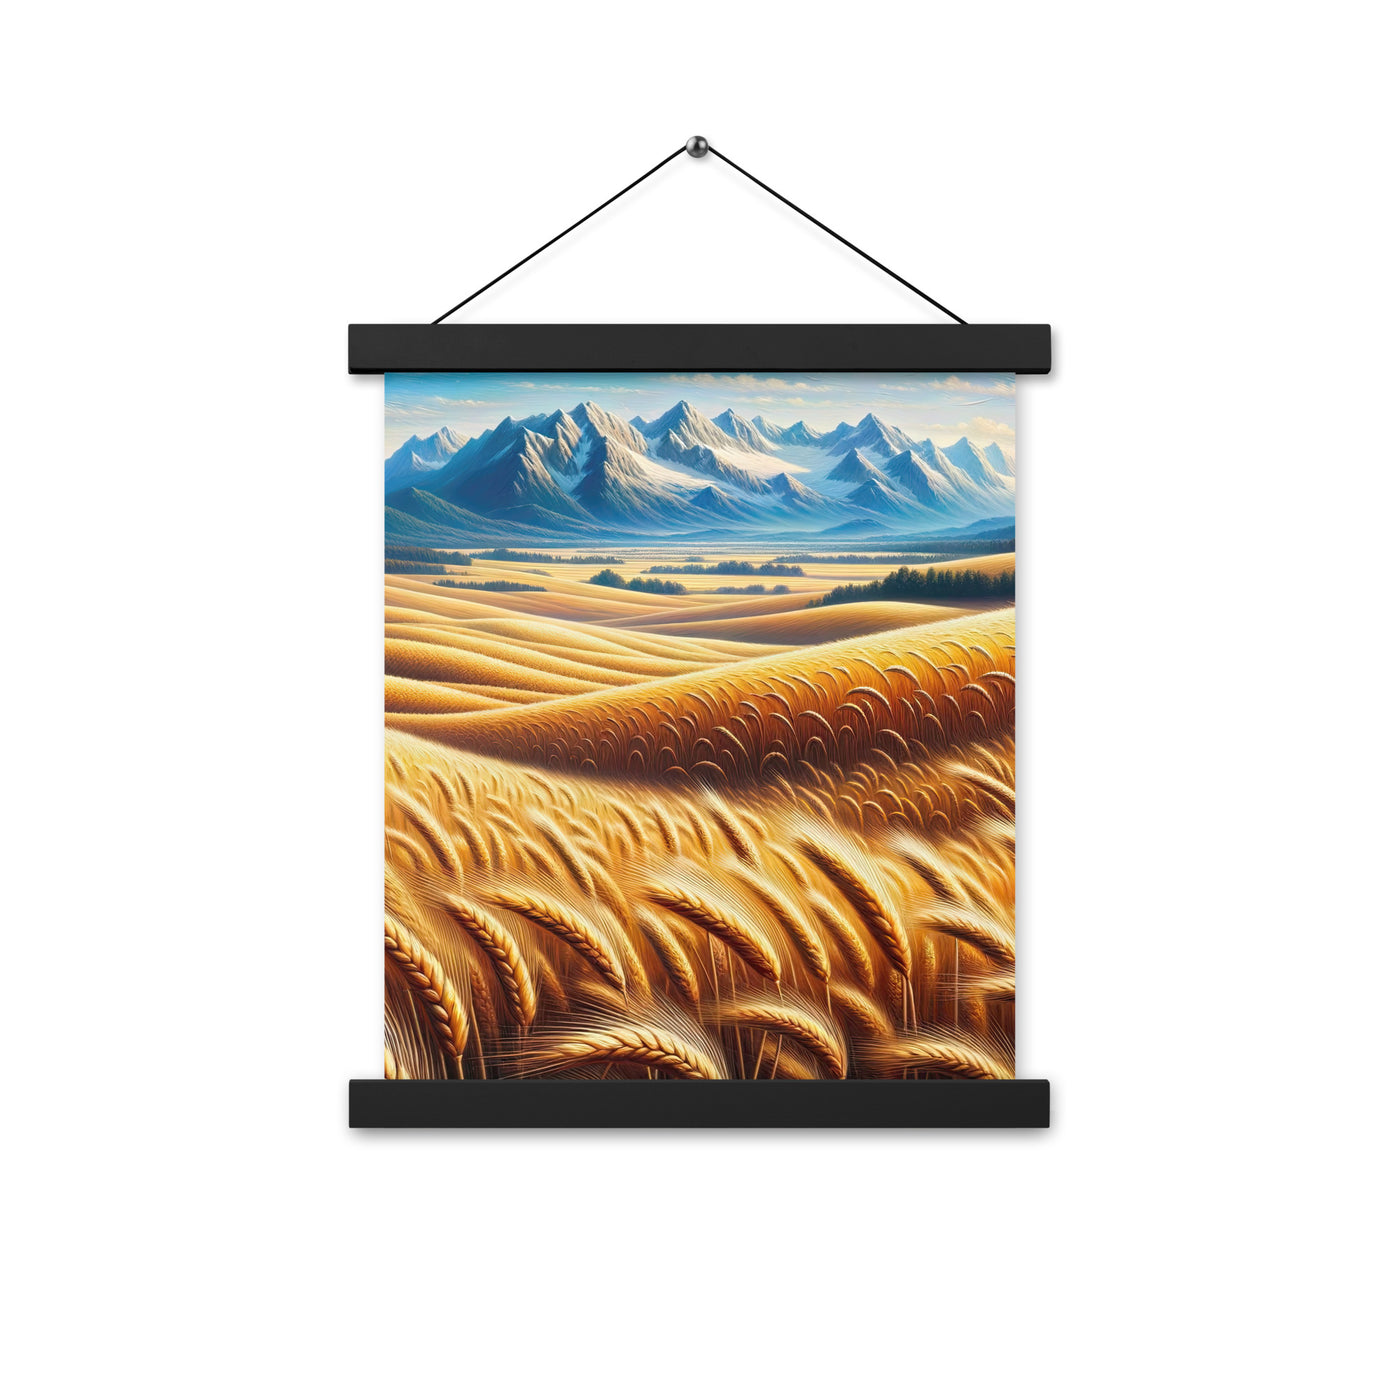 Ölgemälde eines weiten bayerischen Weizenfeldes, golden im Wind (TR) - Premium Poster mit Aufhängung xxx yyy zzz 27.9 x 35.6 cm